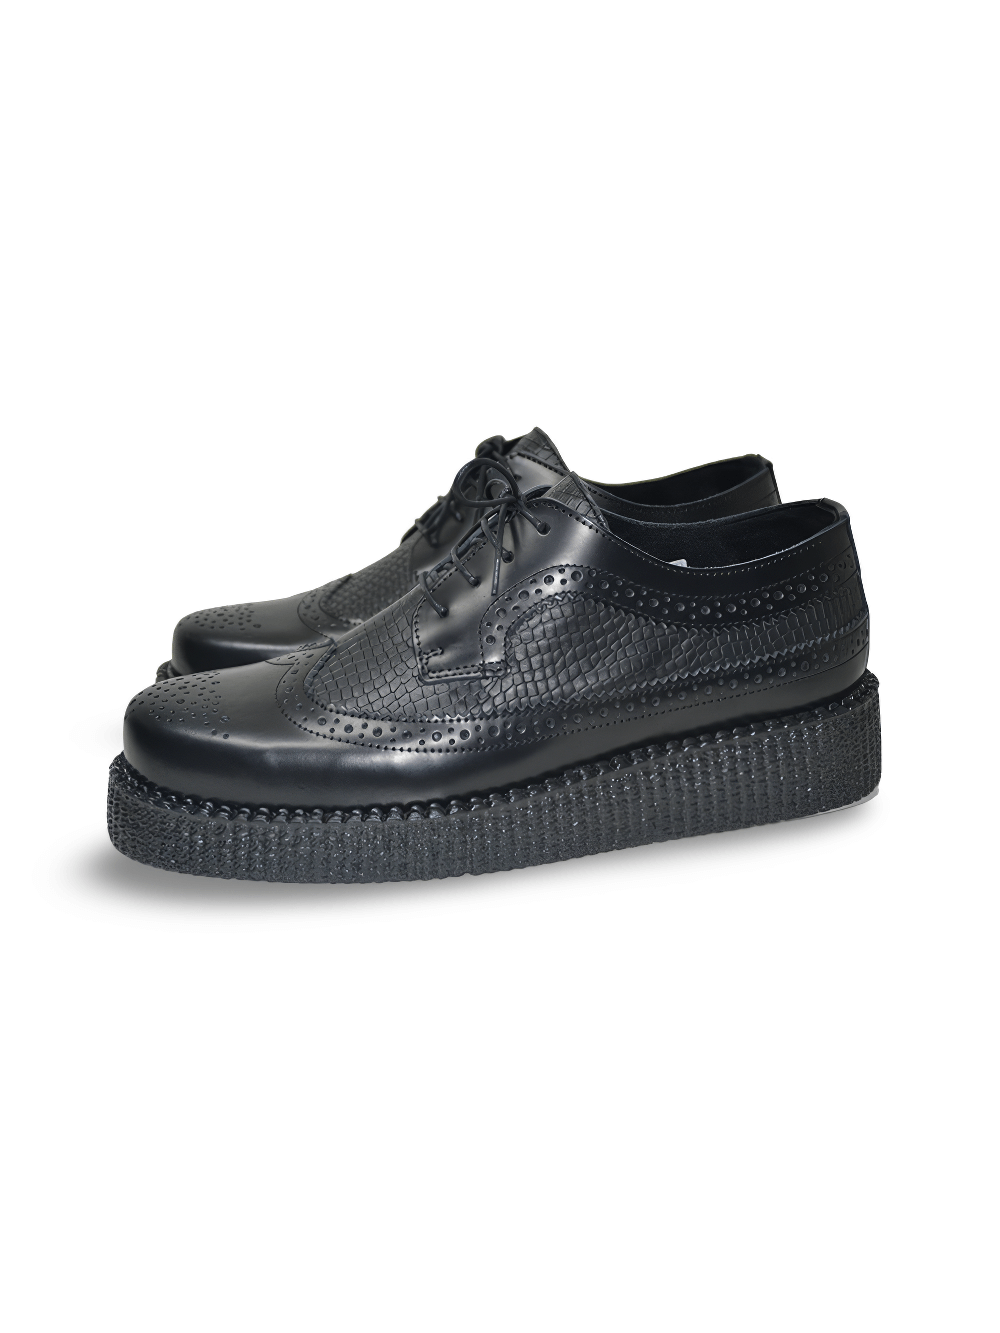 Chaussures Derby unisexes noires à lacets en cuir avec semelle en caoutchouc